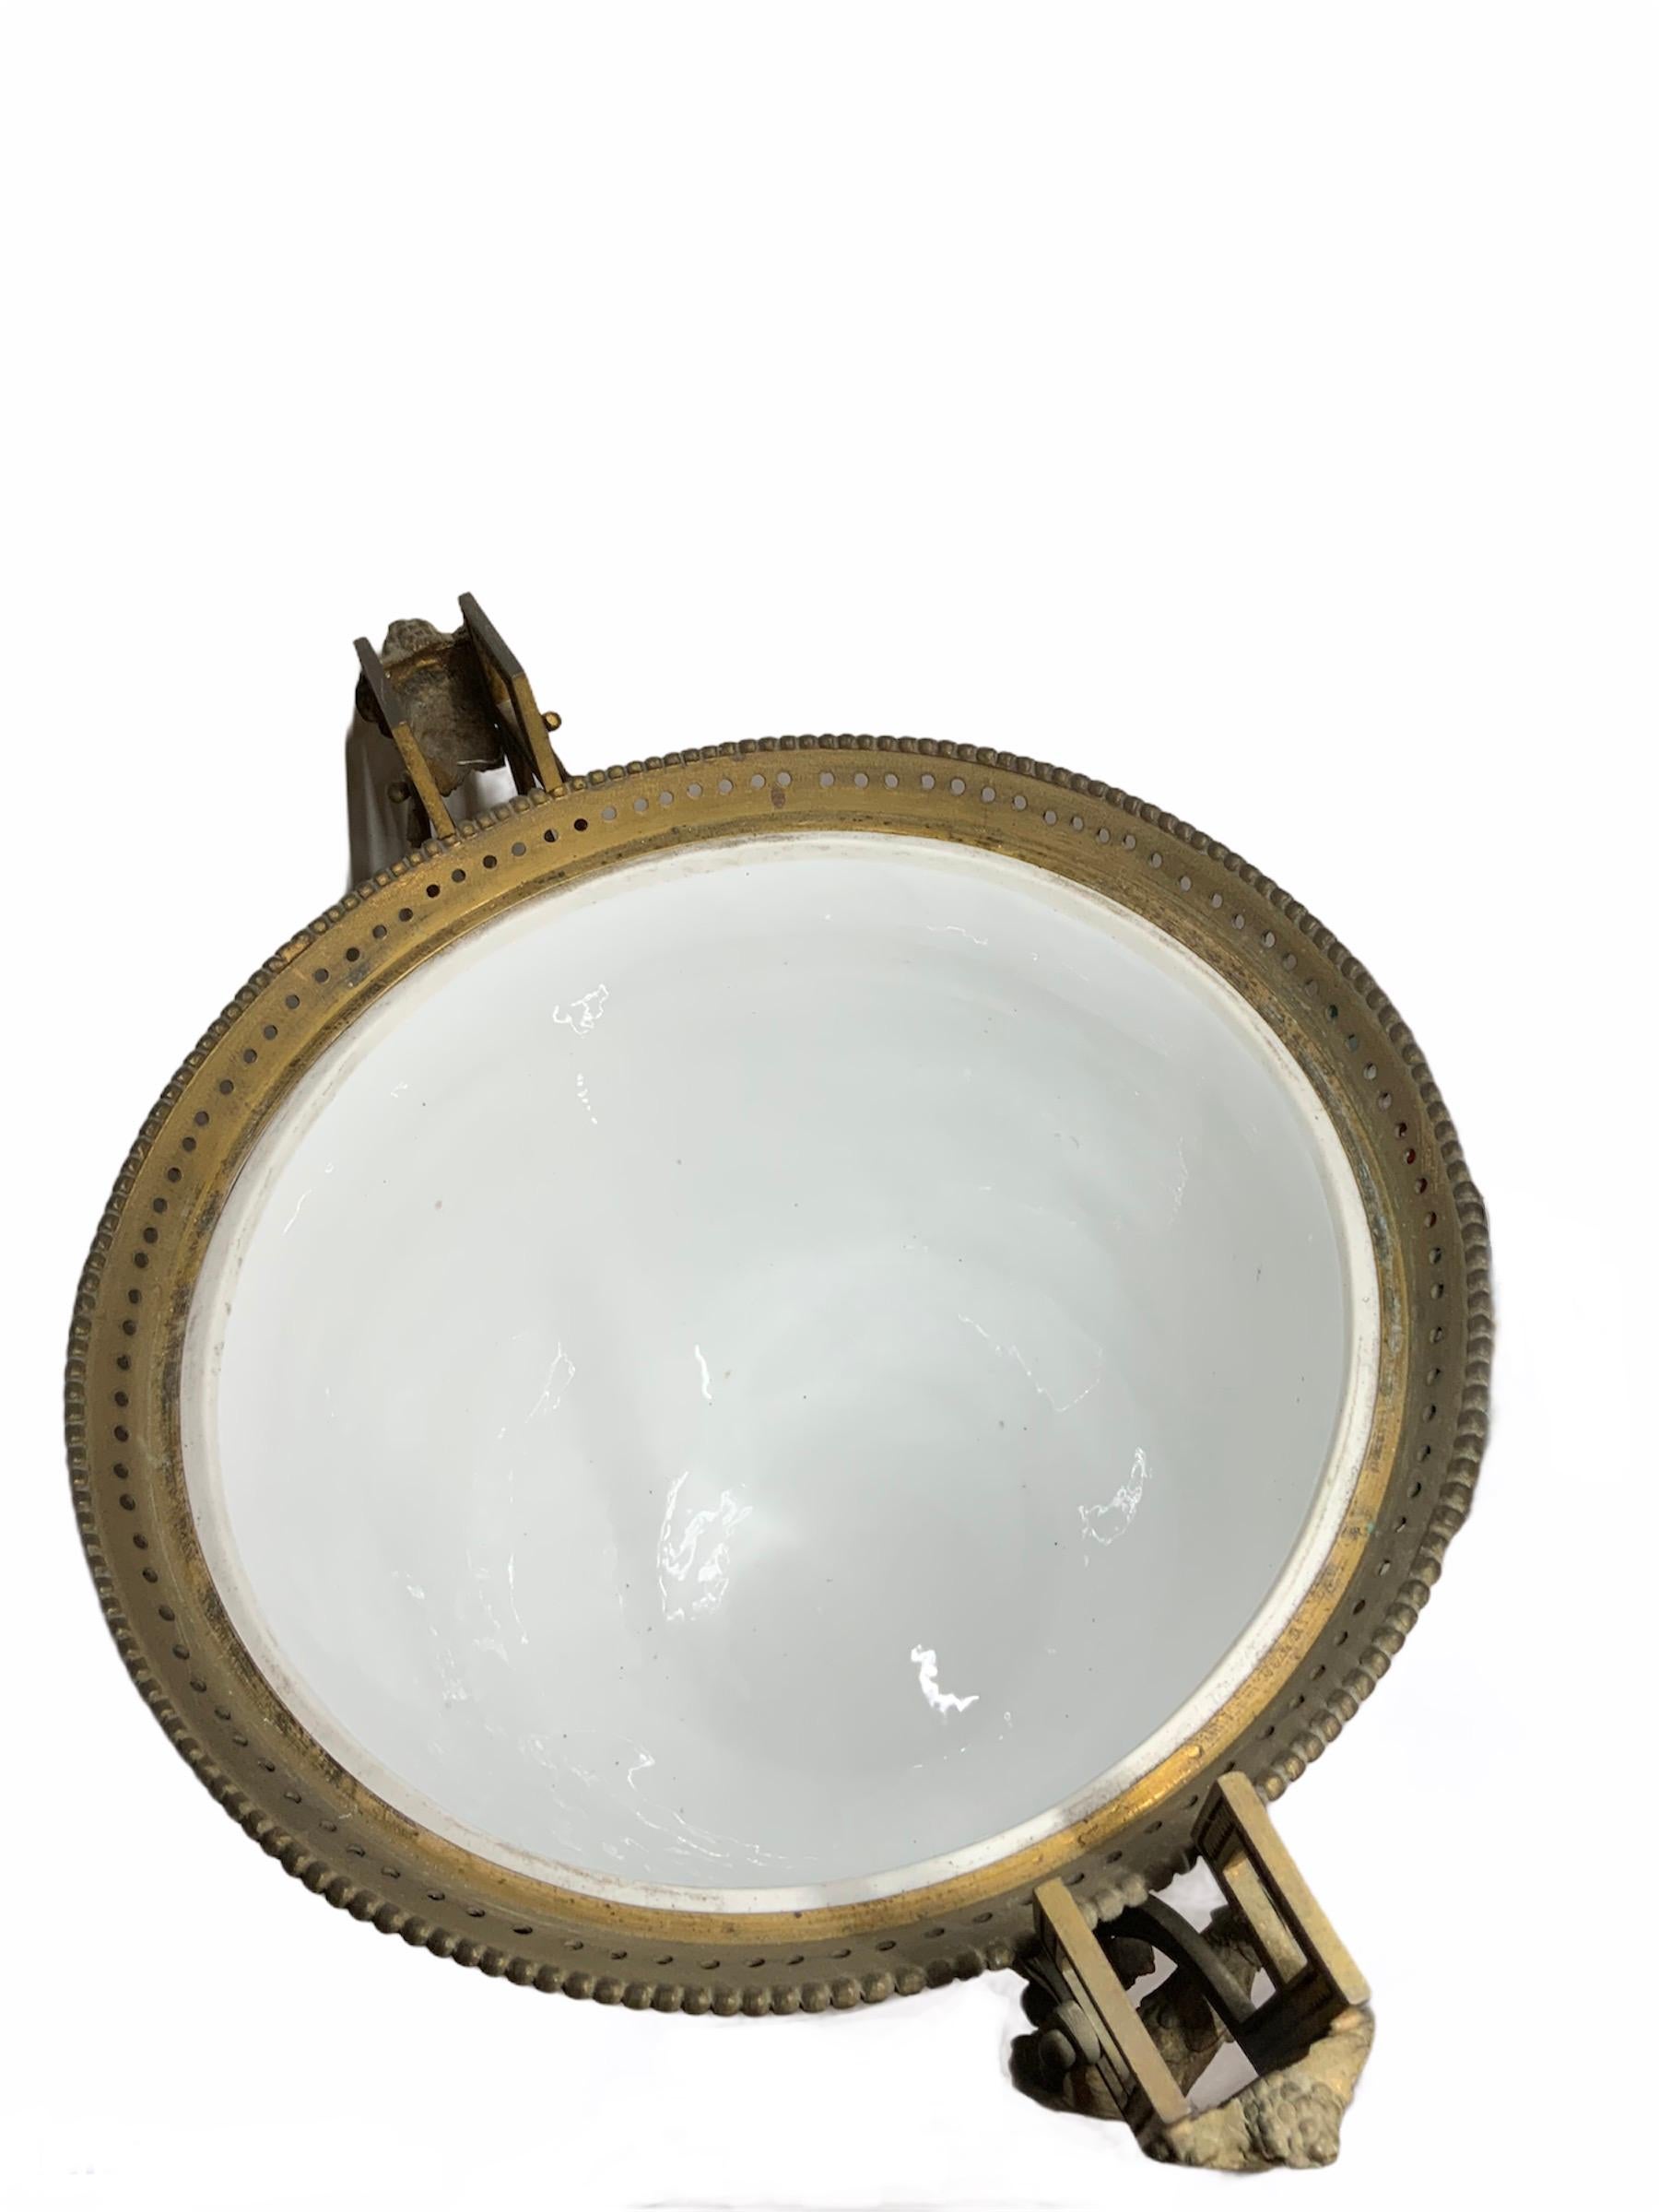 19th Century Meissen Style Porcelain Napoleon lll Bowl Vase Centerpiece For Sale 2